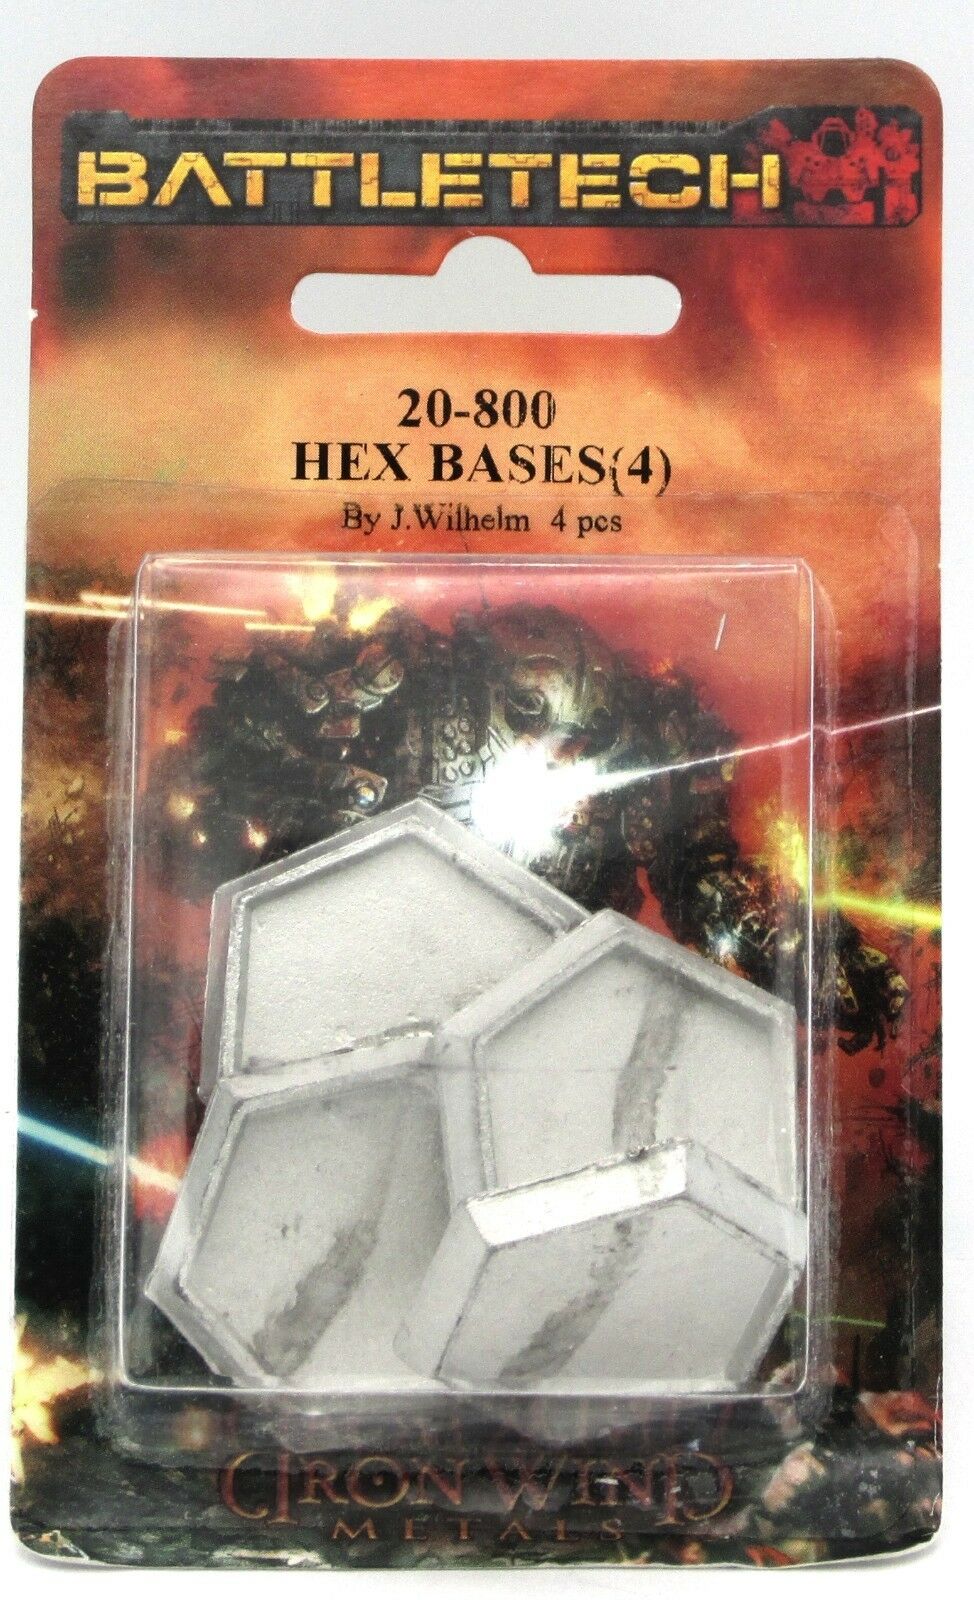 Battletech 20-800 Hex Bases (4) 25mm Metal Miniature Stands Mech Accessories Nib